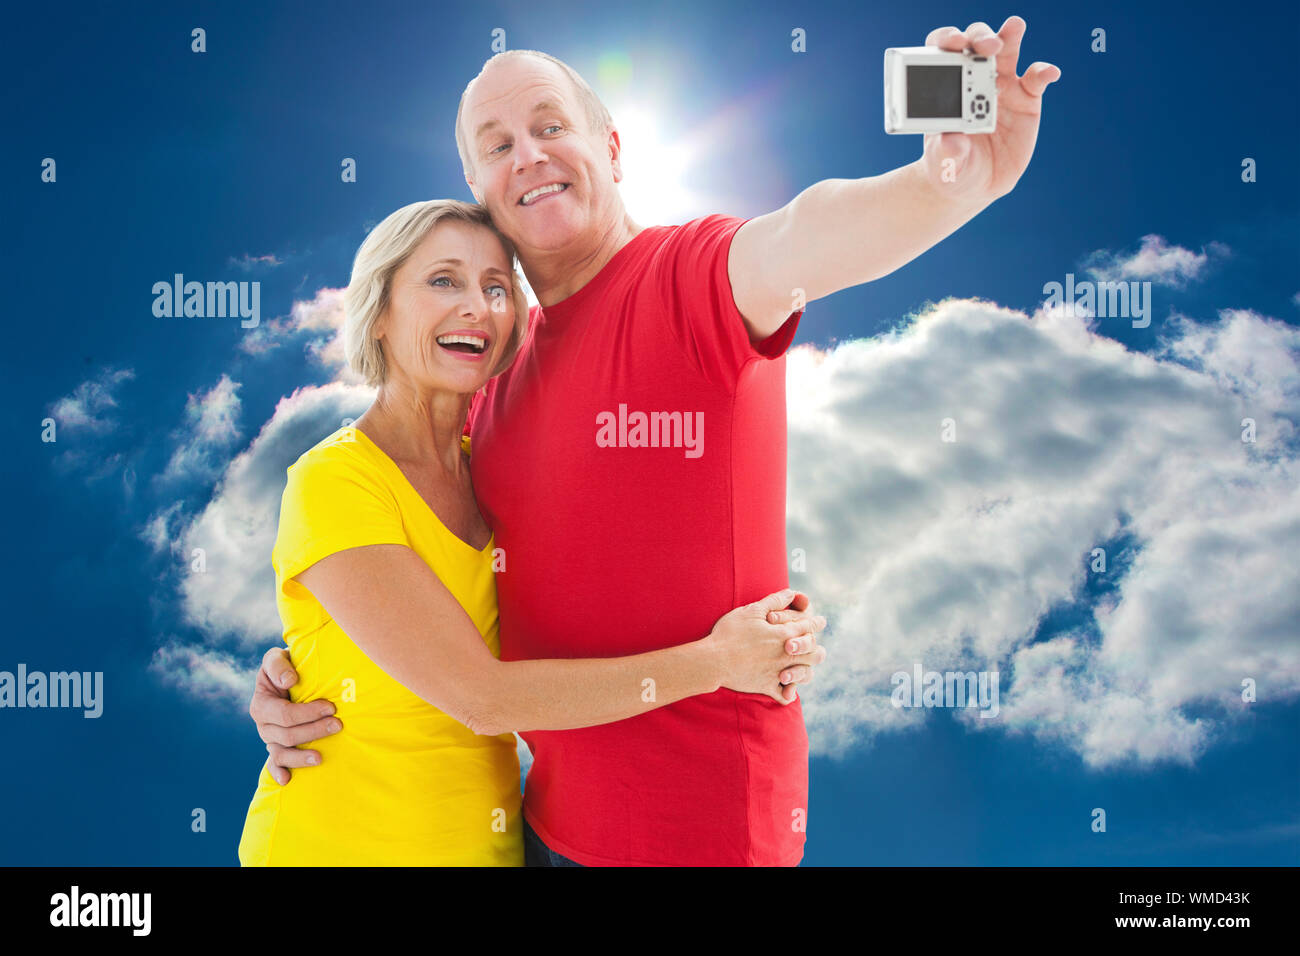 Gerne älteres Ehepaar ein selfie zusammen gegen den blauen Himmel mit Wolken und Sonne Stockfoto